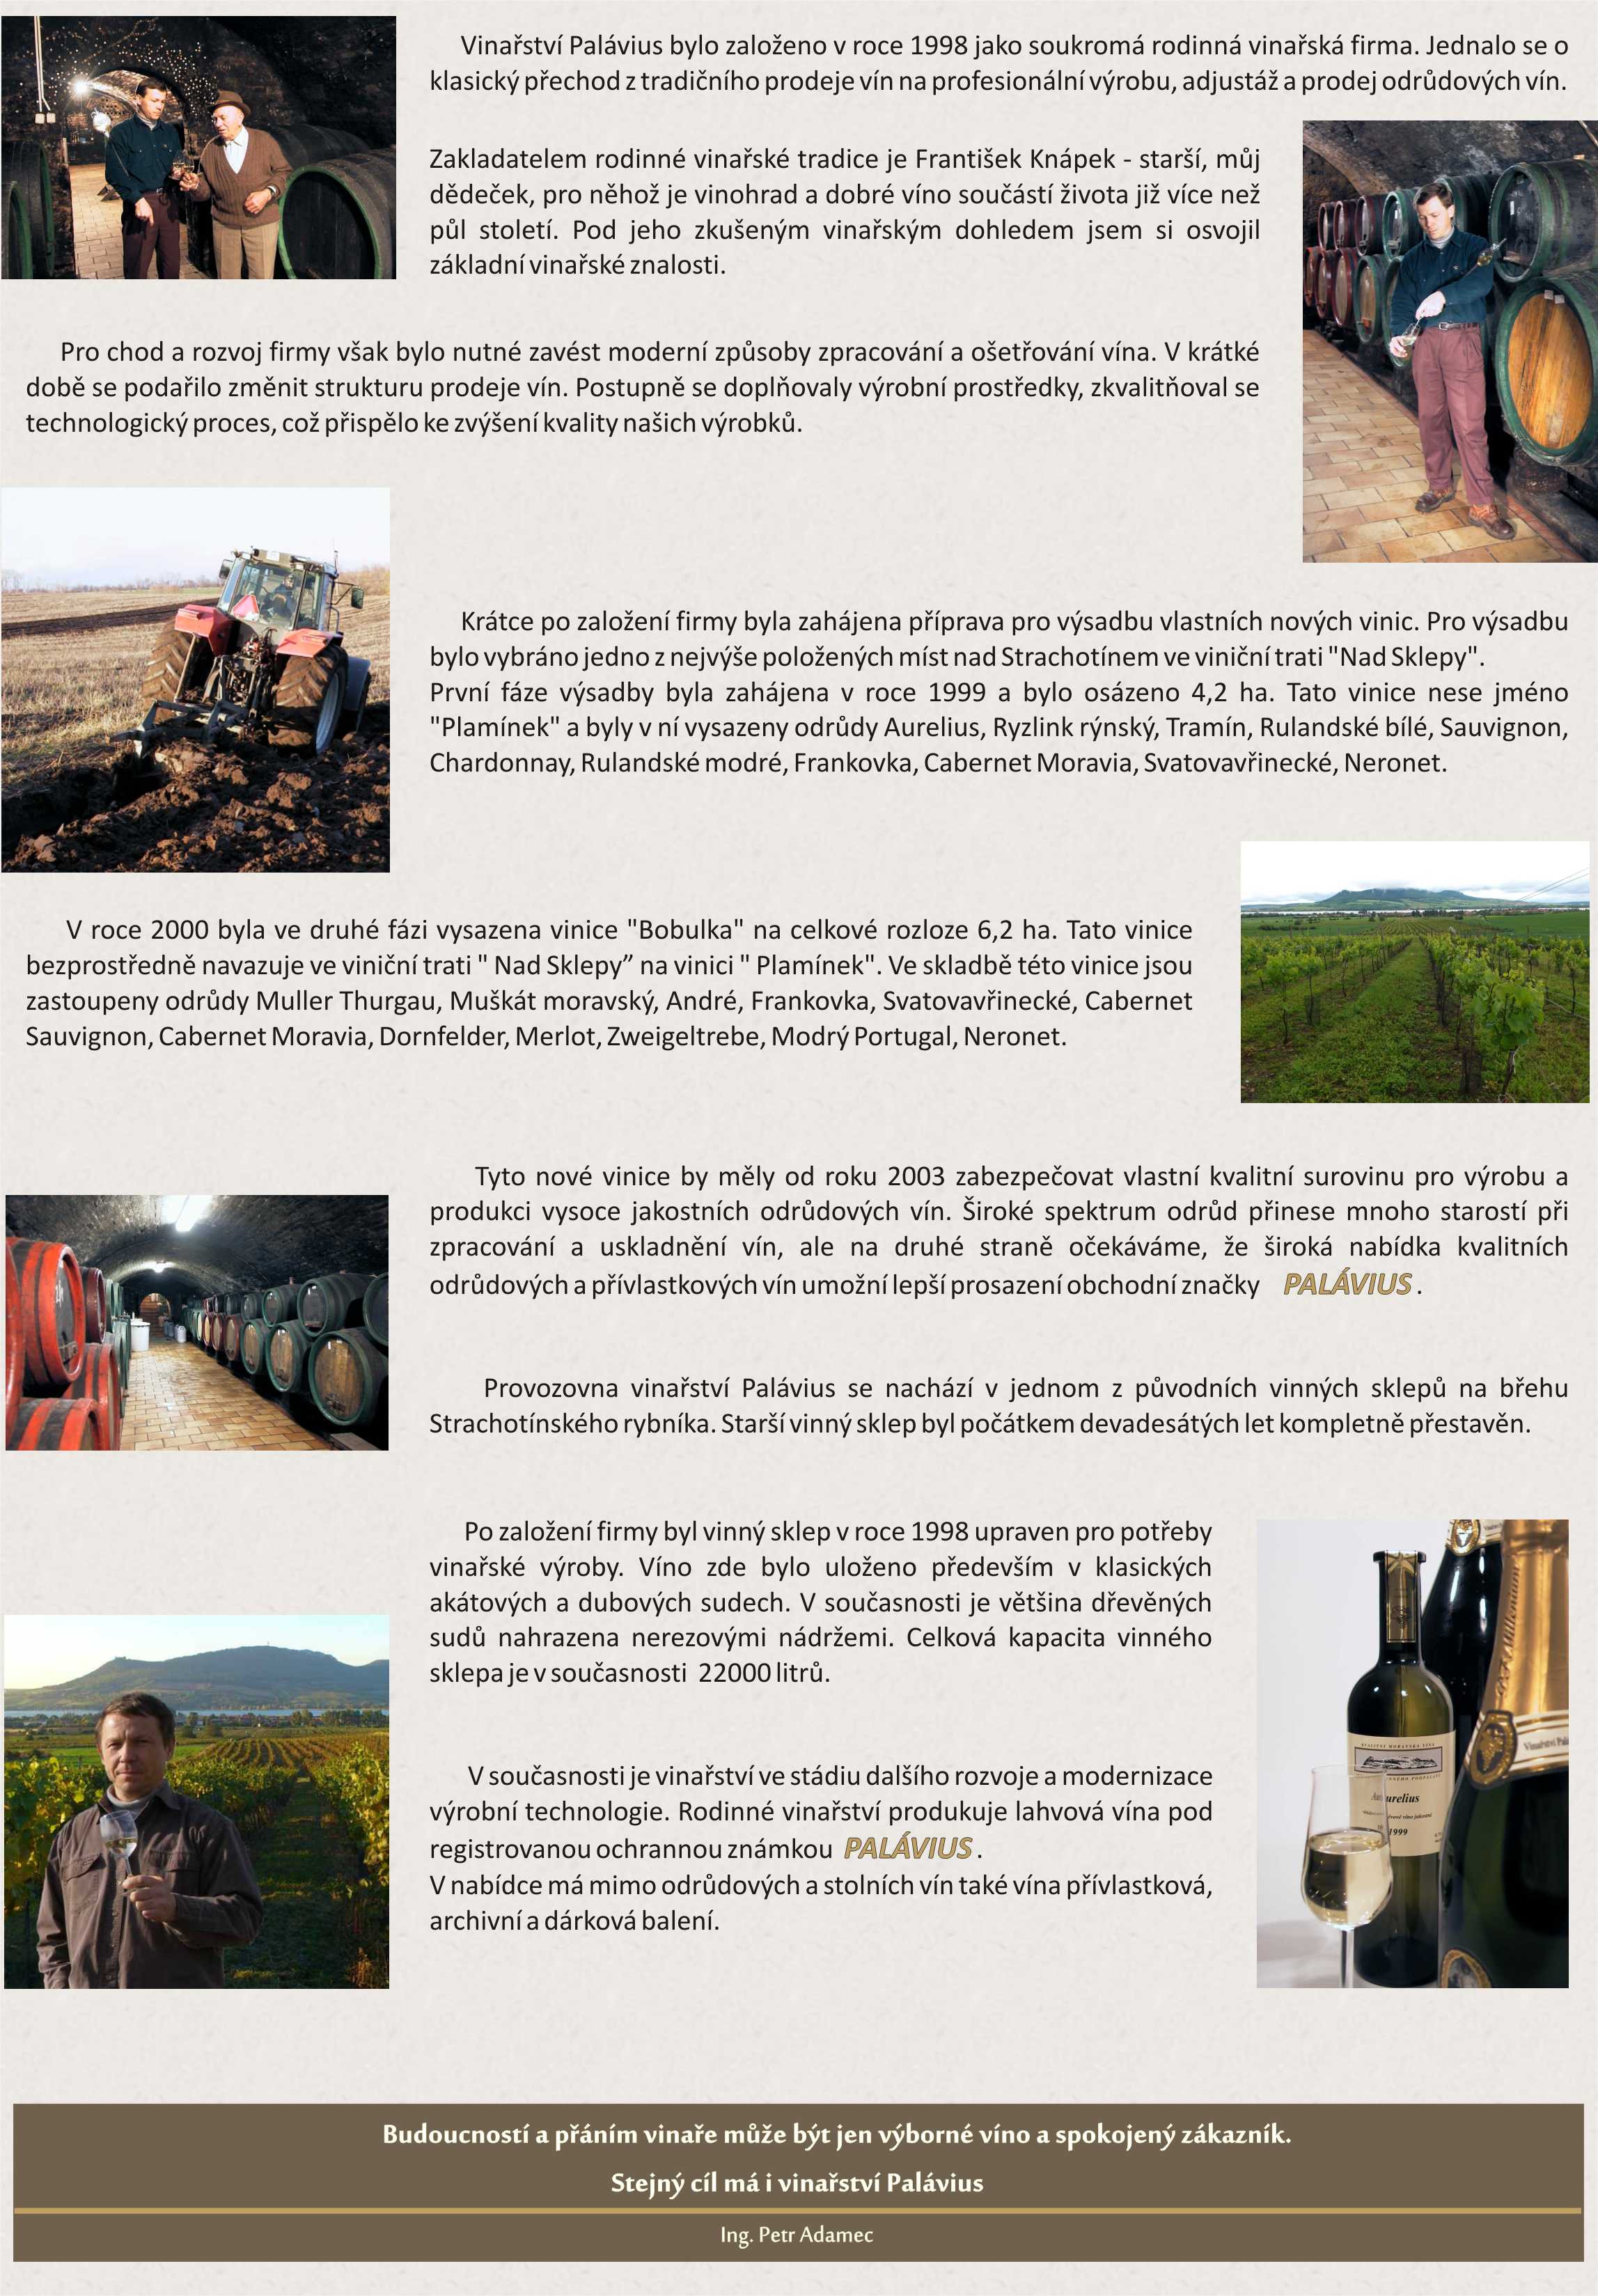 Historie vinařství-mramor JPG